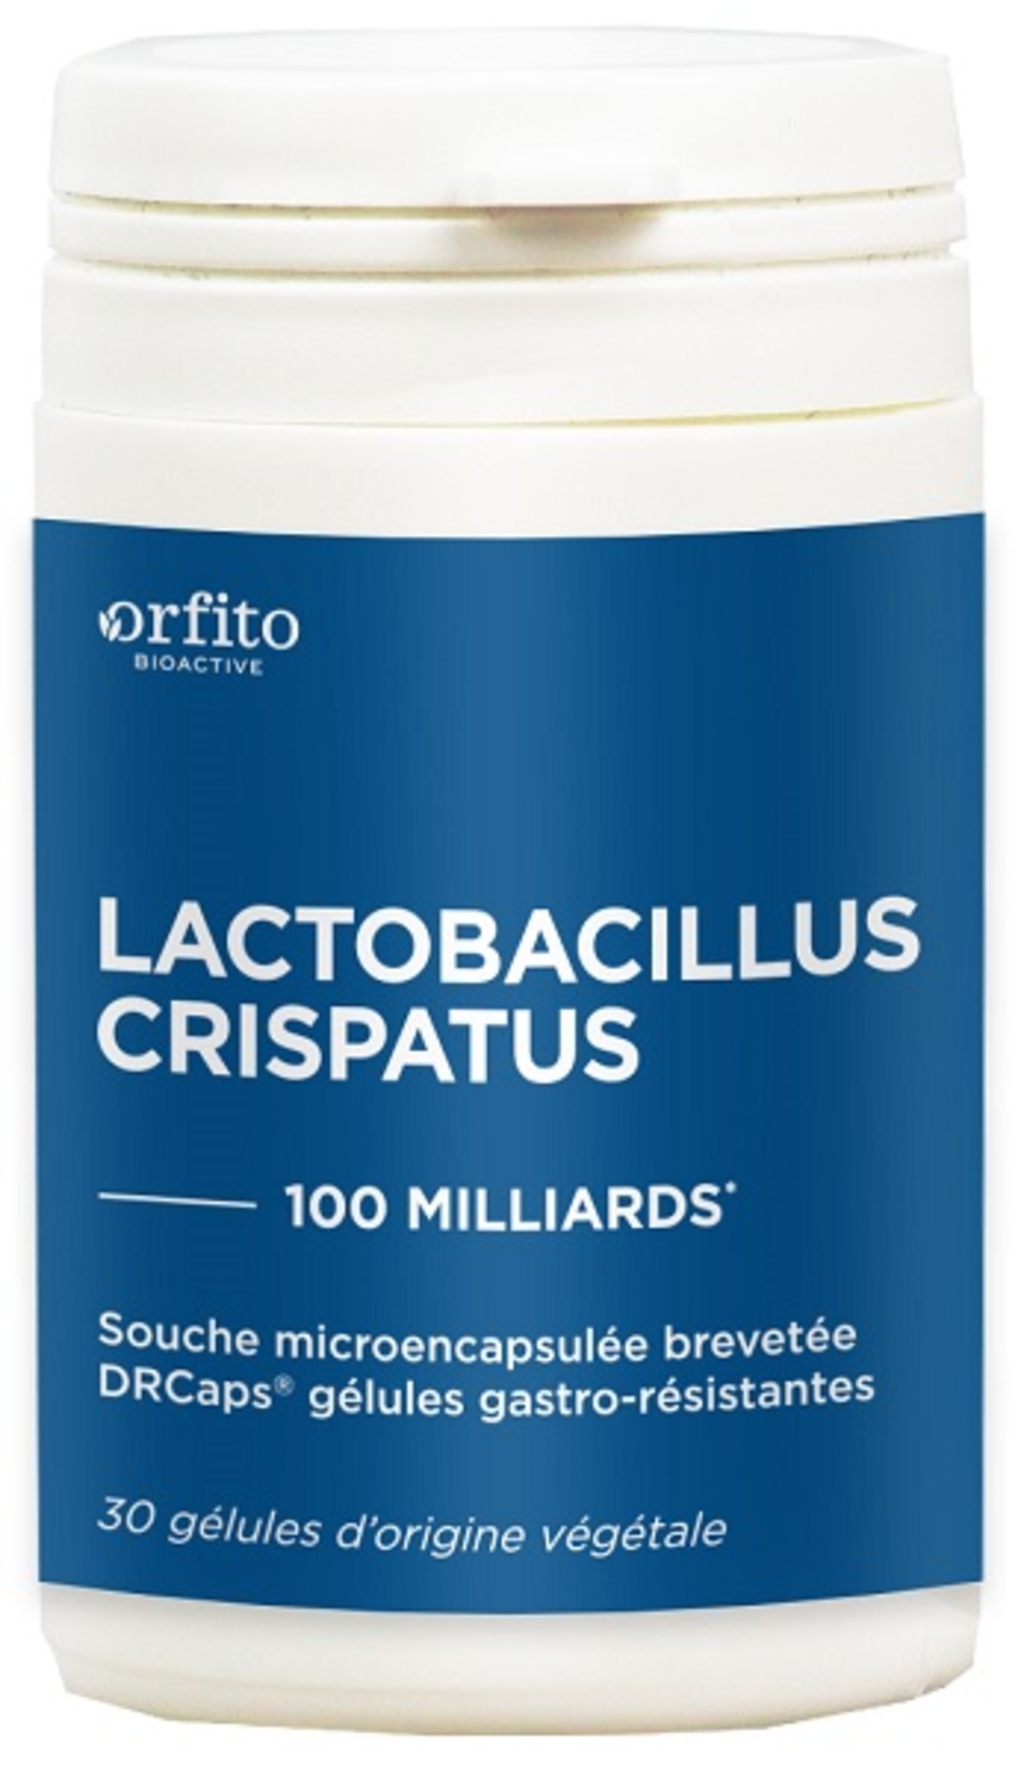 Lactobacillus crispatus 100 milliards